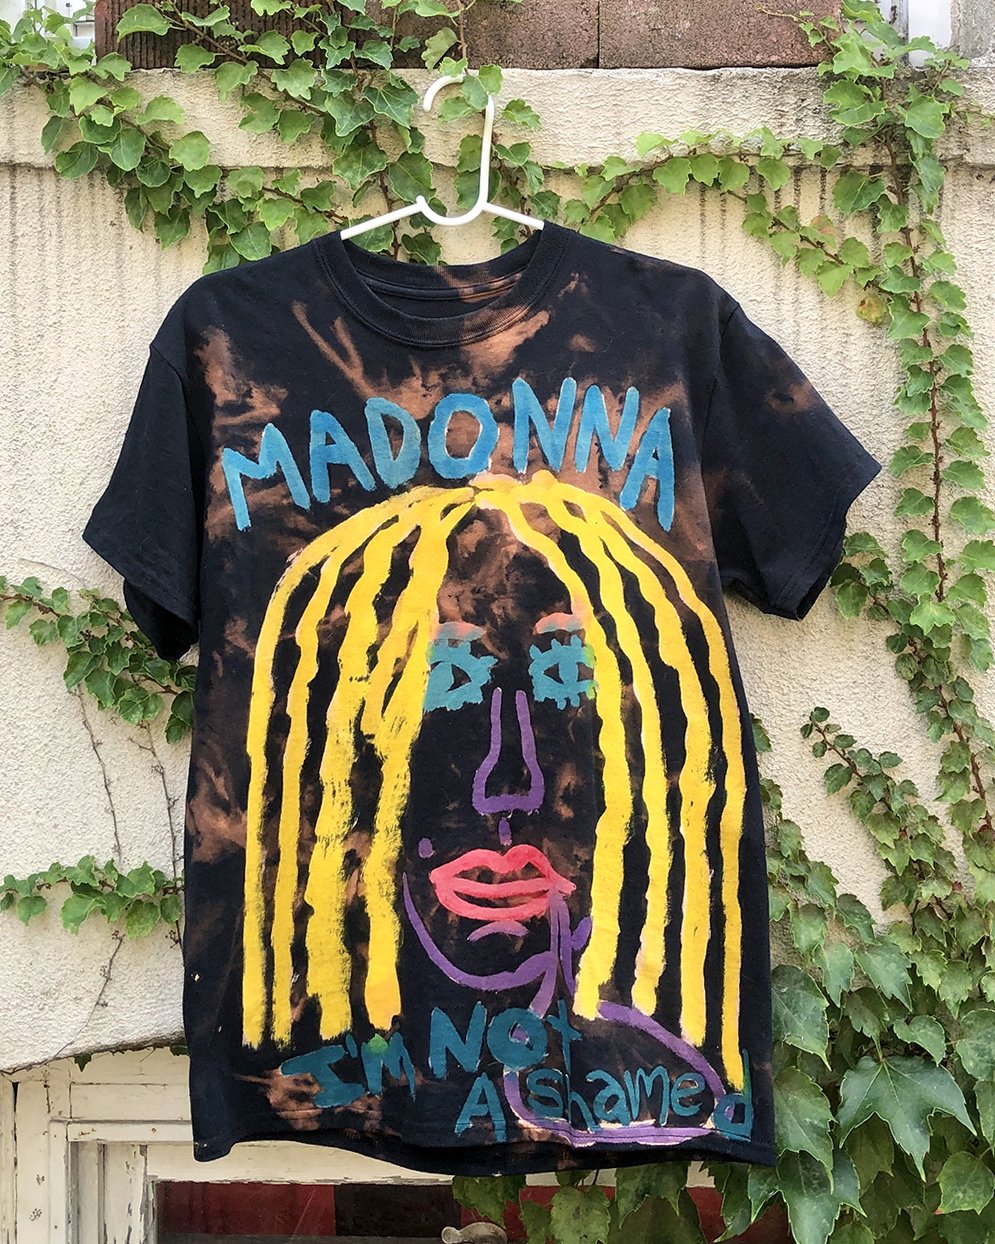 Madonna - I'm Not Ashamed t-shirt